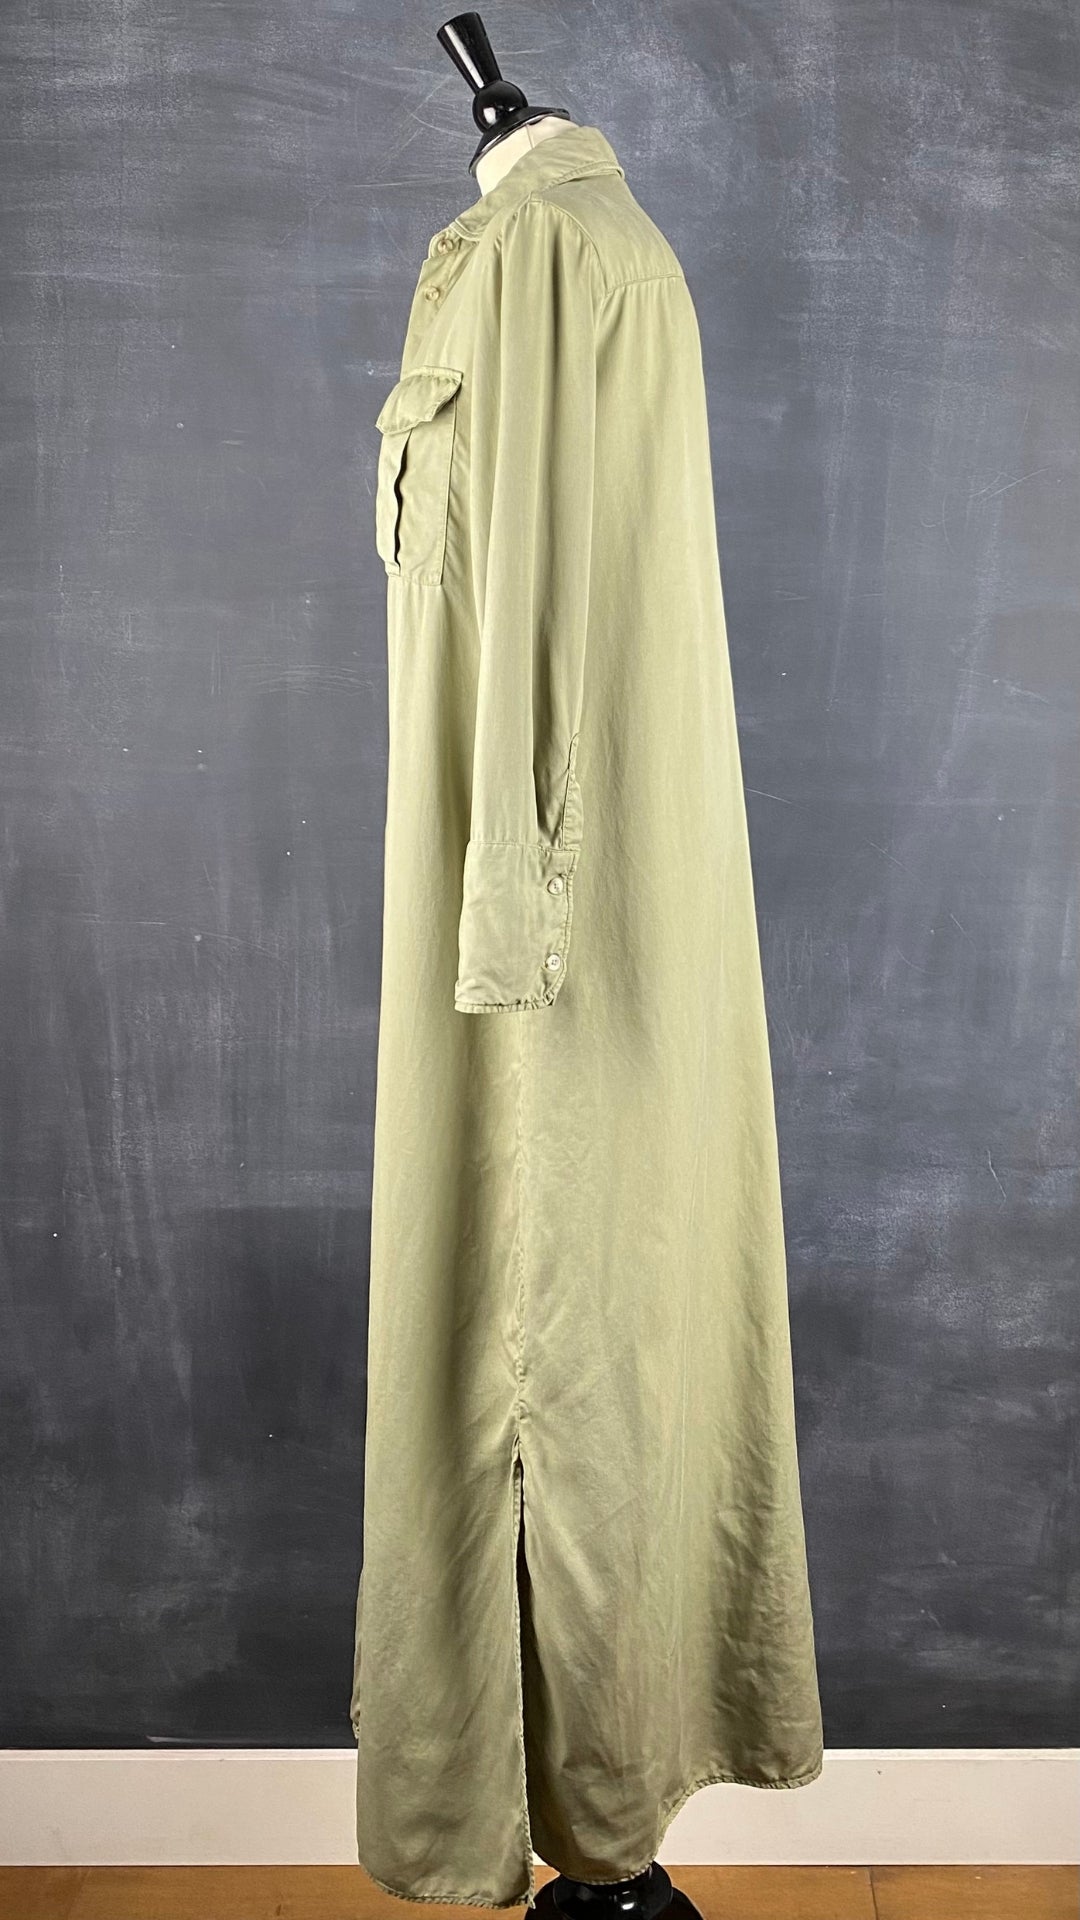 Robe chemisier longue kaki/olive doux en lyocell Massimo Dutti, taille 6. Vue de côté.